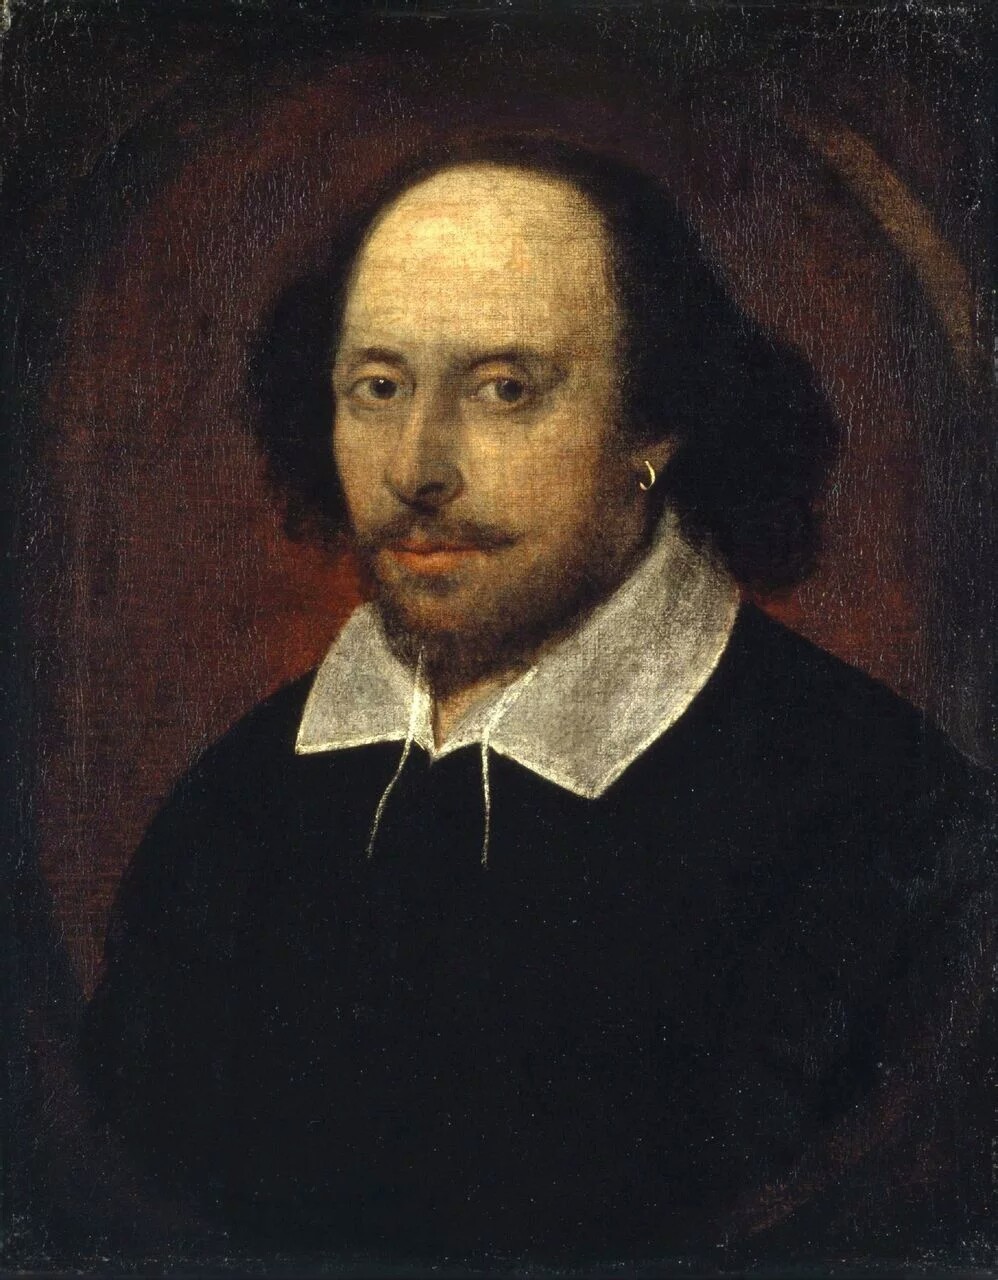 威廉·莎士比亚(william shakespeare,1564年4月26日-1616年4月23日)